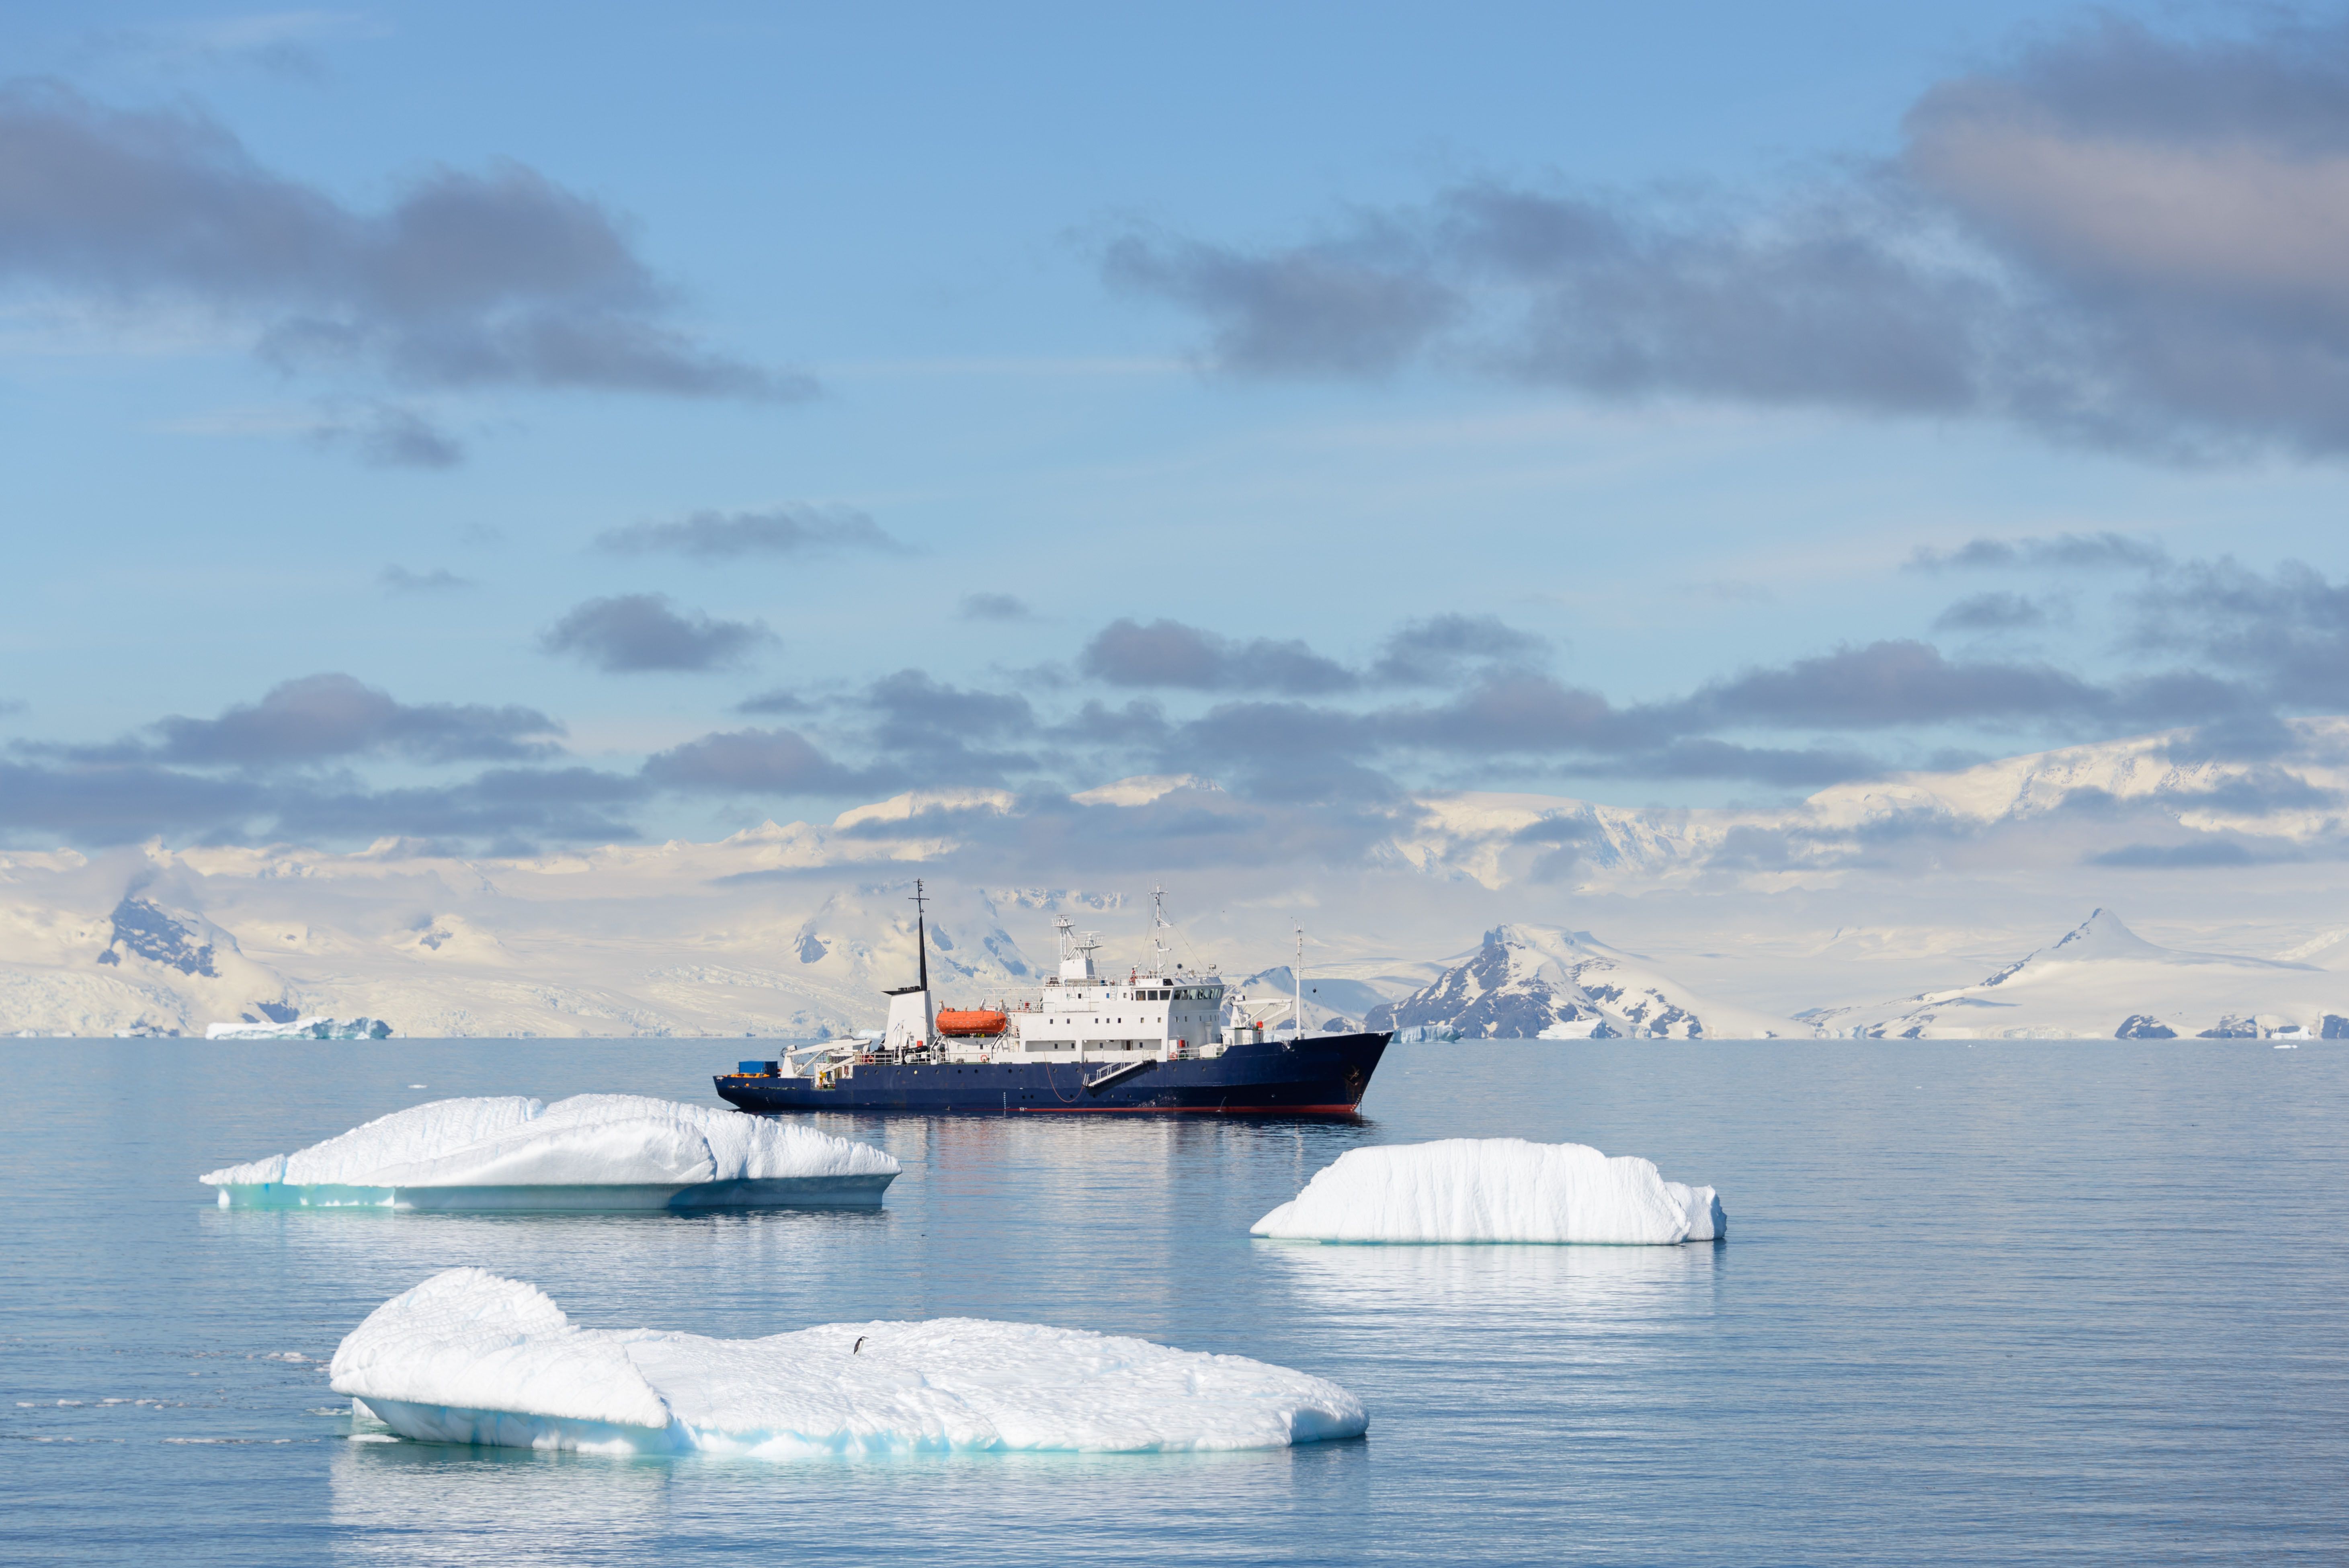 Das Forschungsschiff in der Antarktis betreibt Polarforschung